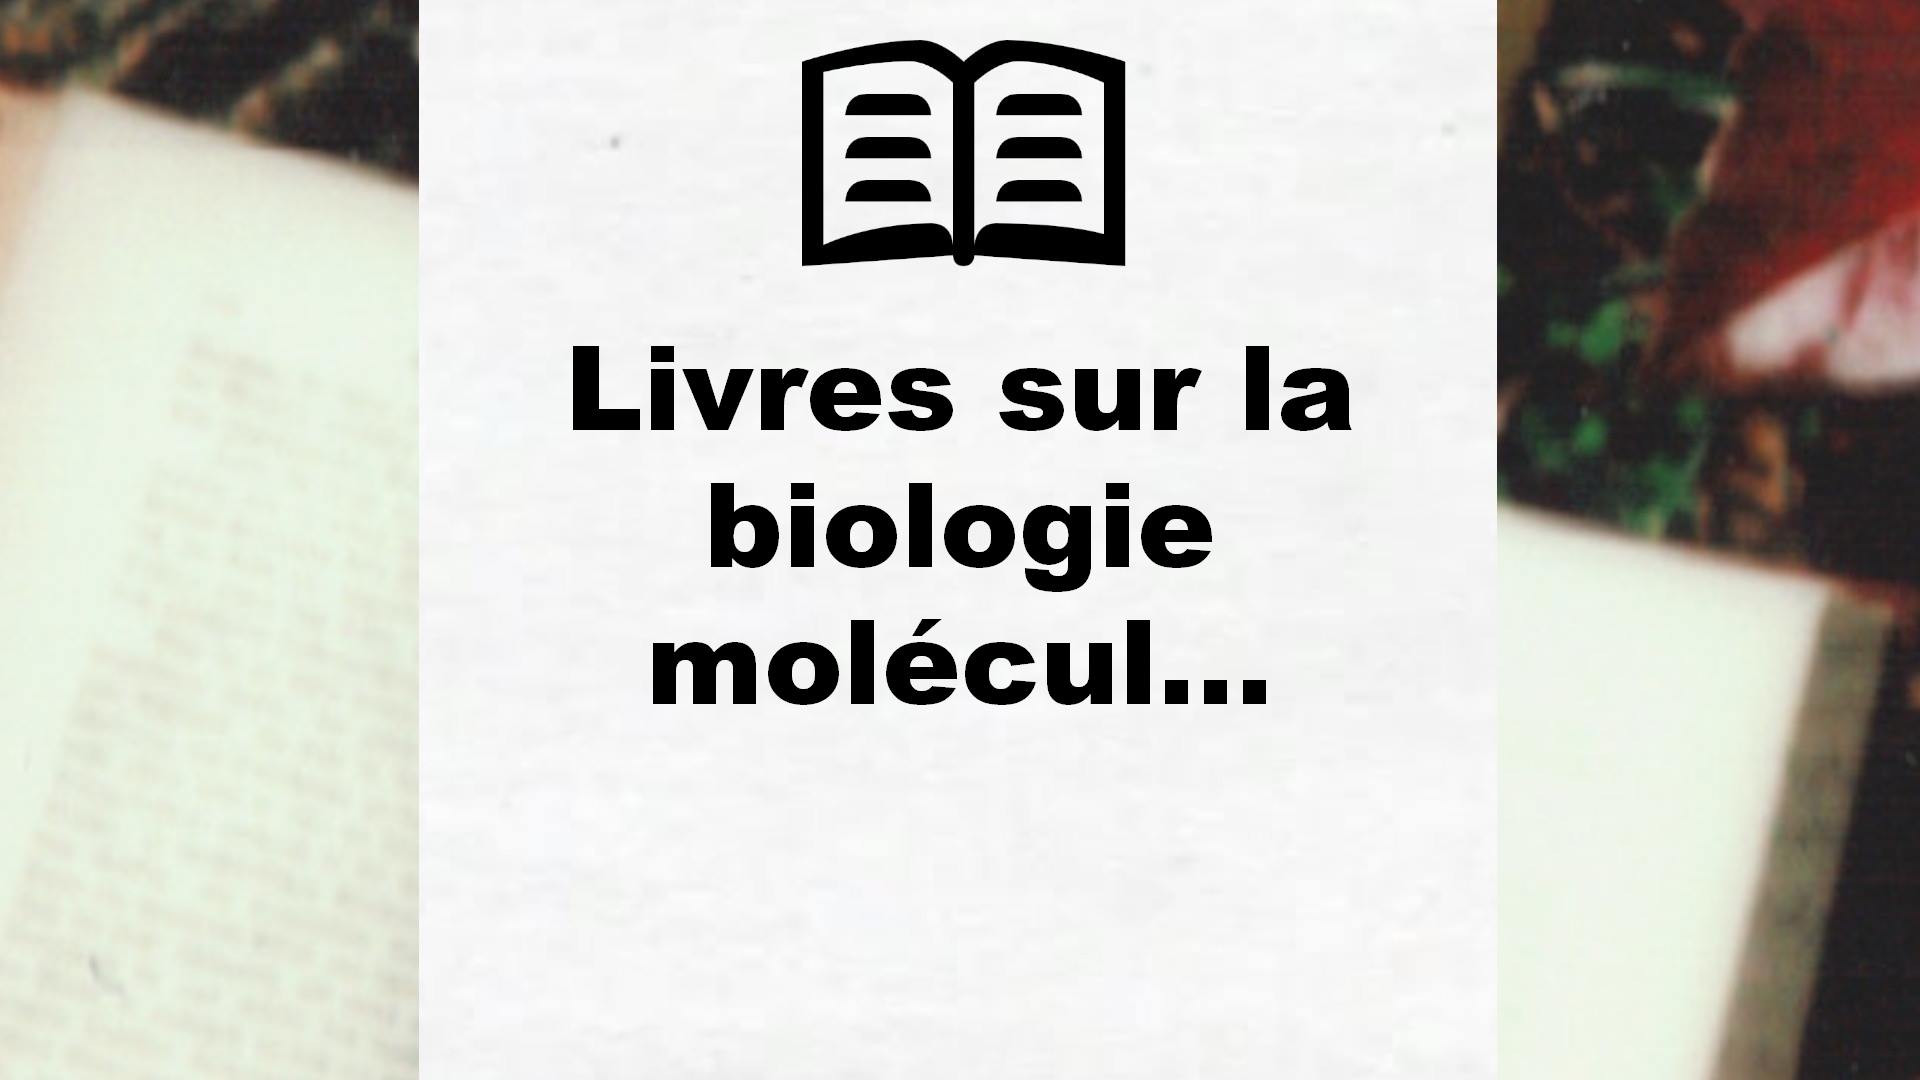 Livres sur la biologie moléculaire